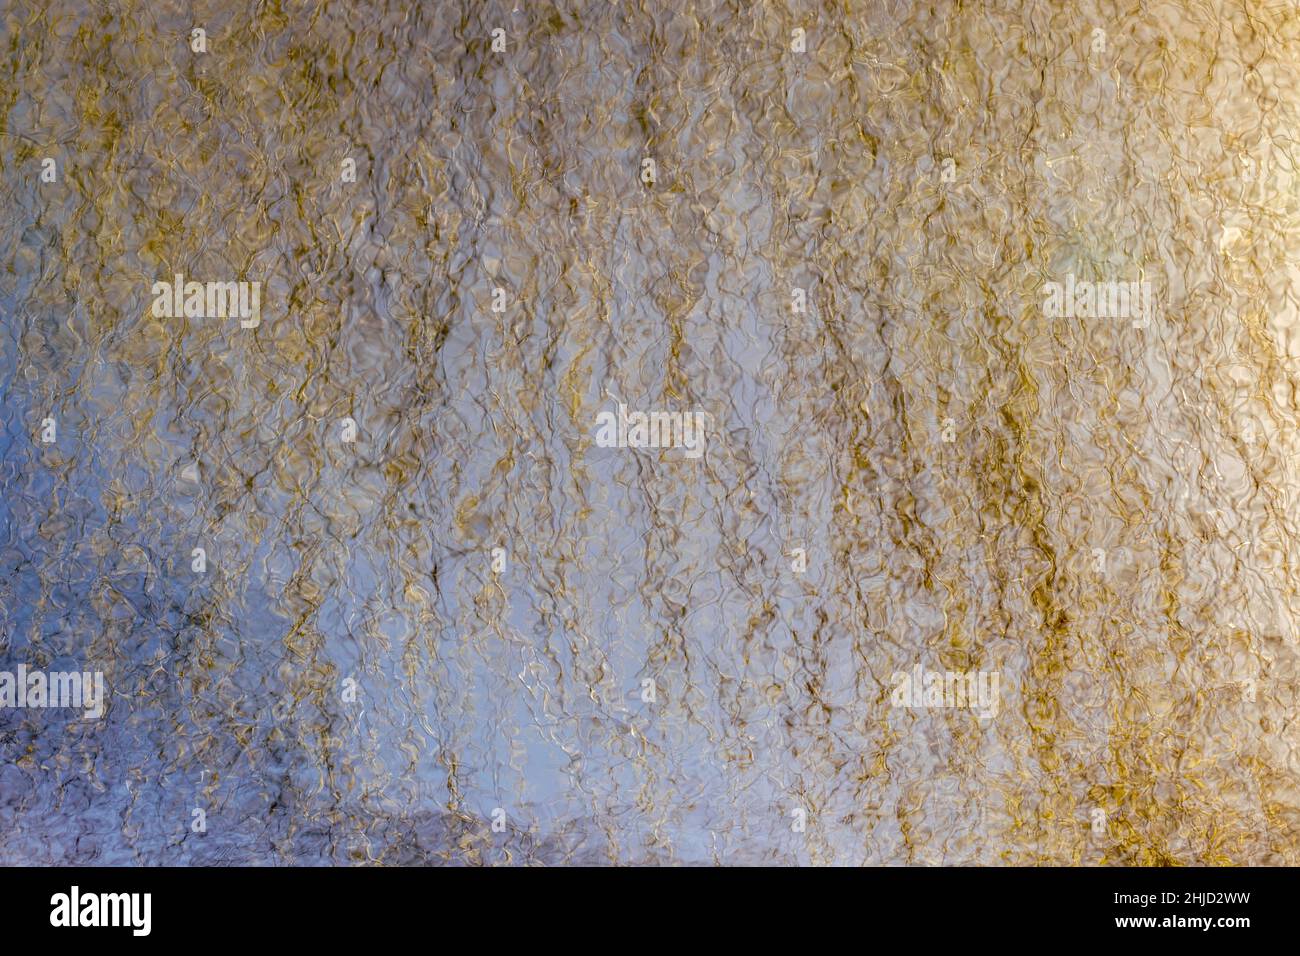 un riflesso di rami di salice dorato nell'acqua, una tavolozza di filamenti dorati su sfondo blu Foto Stock